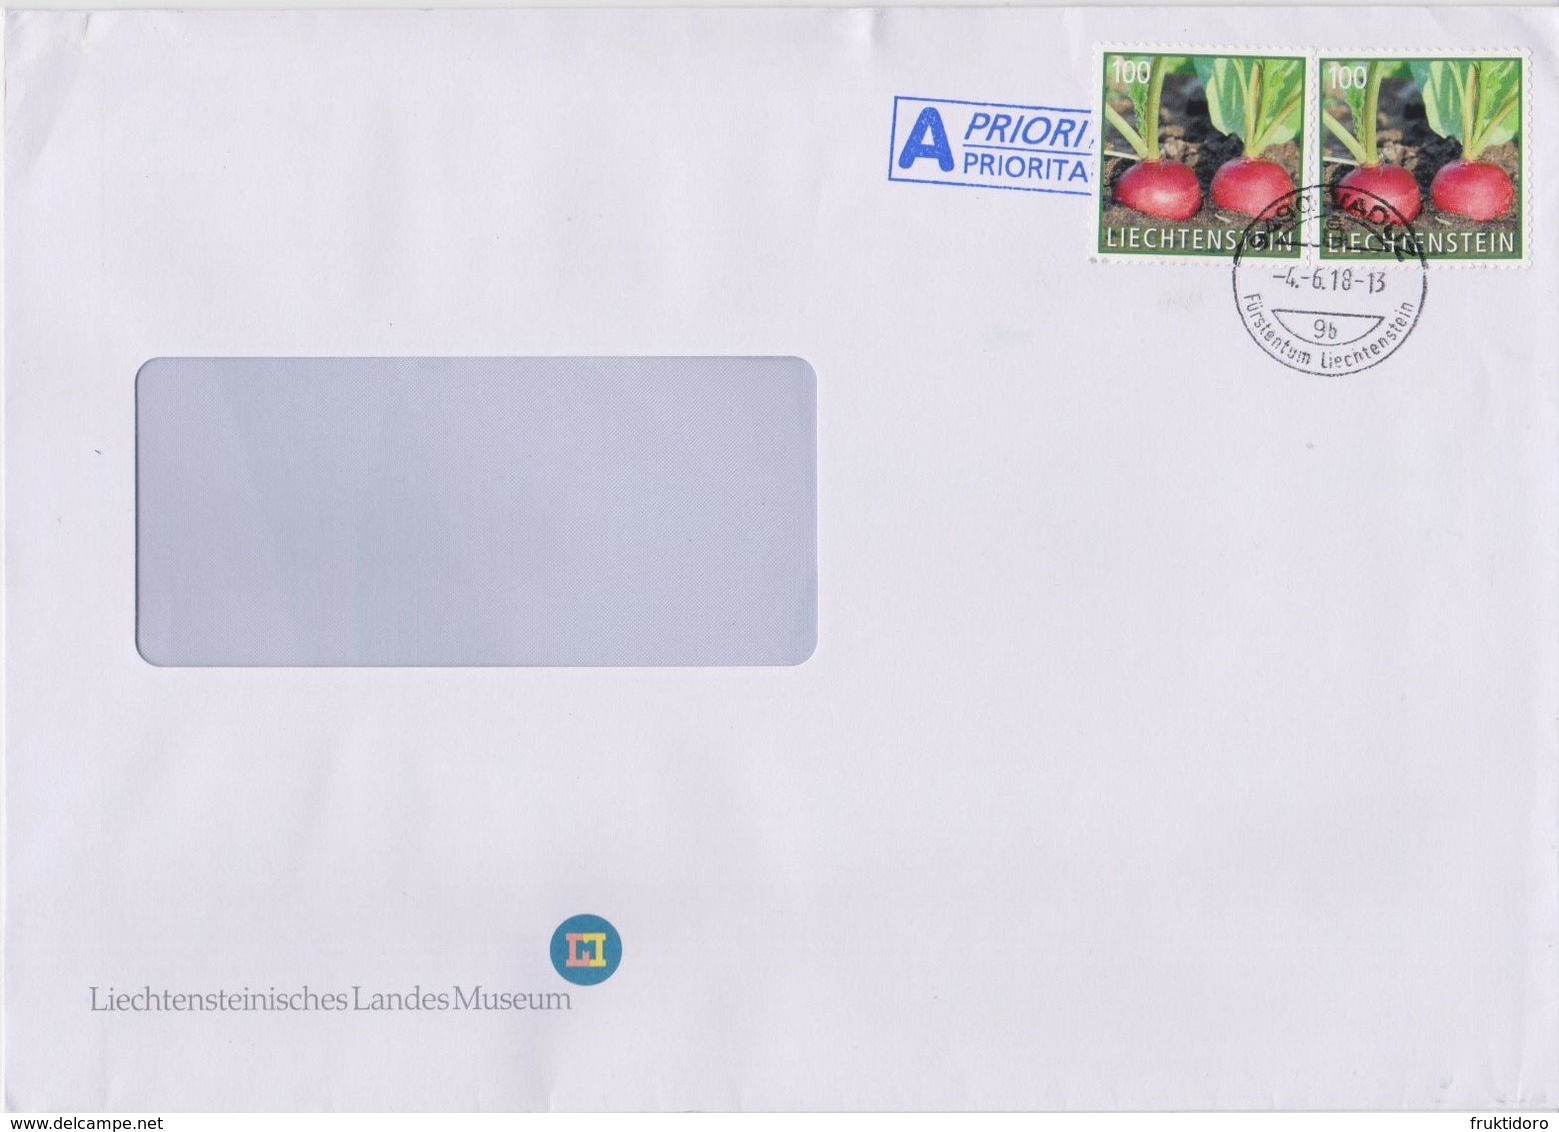 Liechtenstein Postmark - Envelope Liechtenschteinisches Landesmuseum - Mi 1889 Vegetables - Radish - Macchine Per Obliterare (EMA)